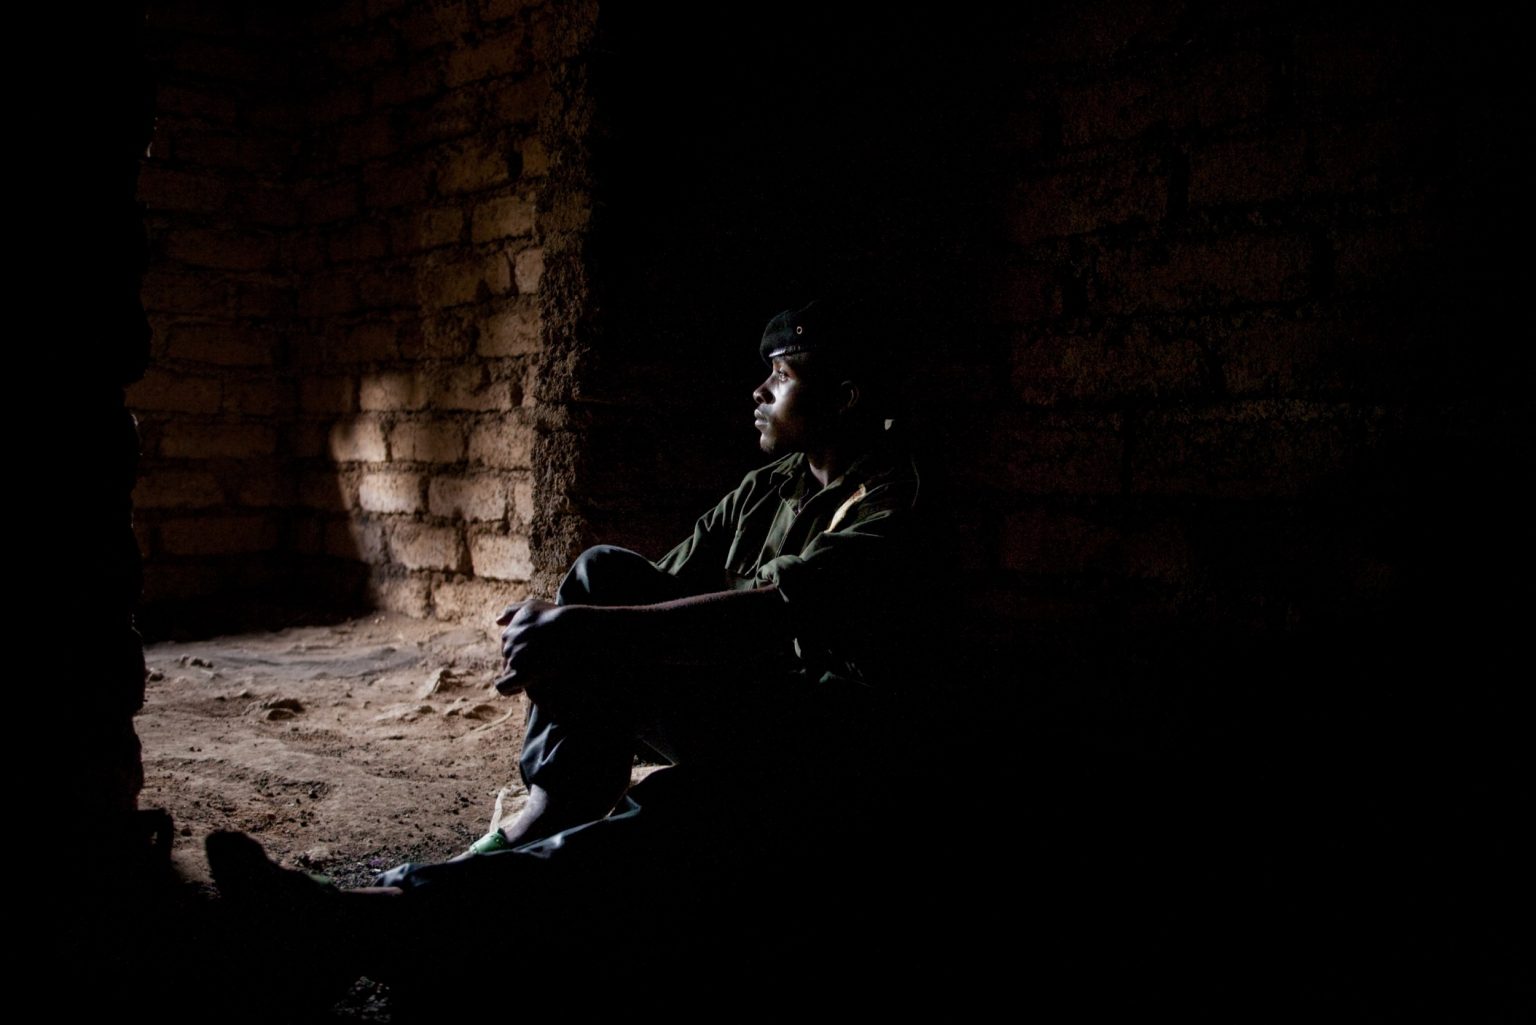 Bambini Soldato
Dr Congo, North Kivu, Kibumba
Gennaio Febbraio/2009

Victor ha 17 anni ed è con le FDLR.
Mentre cercava il carbone, a 15 anni, è stato preso con la forza dai militari ed adesso vive nella foresta da due anni. Nonostante la sua famiglia viva nella zona non la vede da quattro mesi: se le si avvicinasse rischierebbe di di essere arrestato.
Vorrebbe poter lasciare l'esercito e tornare ad una vita normale, fare il coltivatore o l'allevatore.

Child soldier
Dr Congo, North Kivu, Kibumba
January/February/2009

Victor is 17 years old and fights with the FDLR. He was kidnapped by the militaries when he was 15 years old and he's been living in the forrest for the past two years. Even though his family lives in the area he hasn't seen it for the past for months as if he did he could be arrested. His dream would be to leave the military and work as a breeder or farmer.